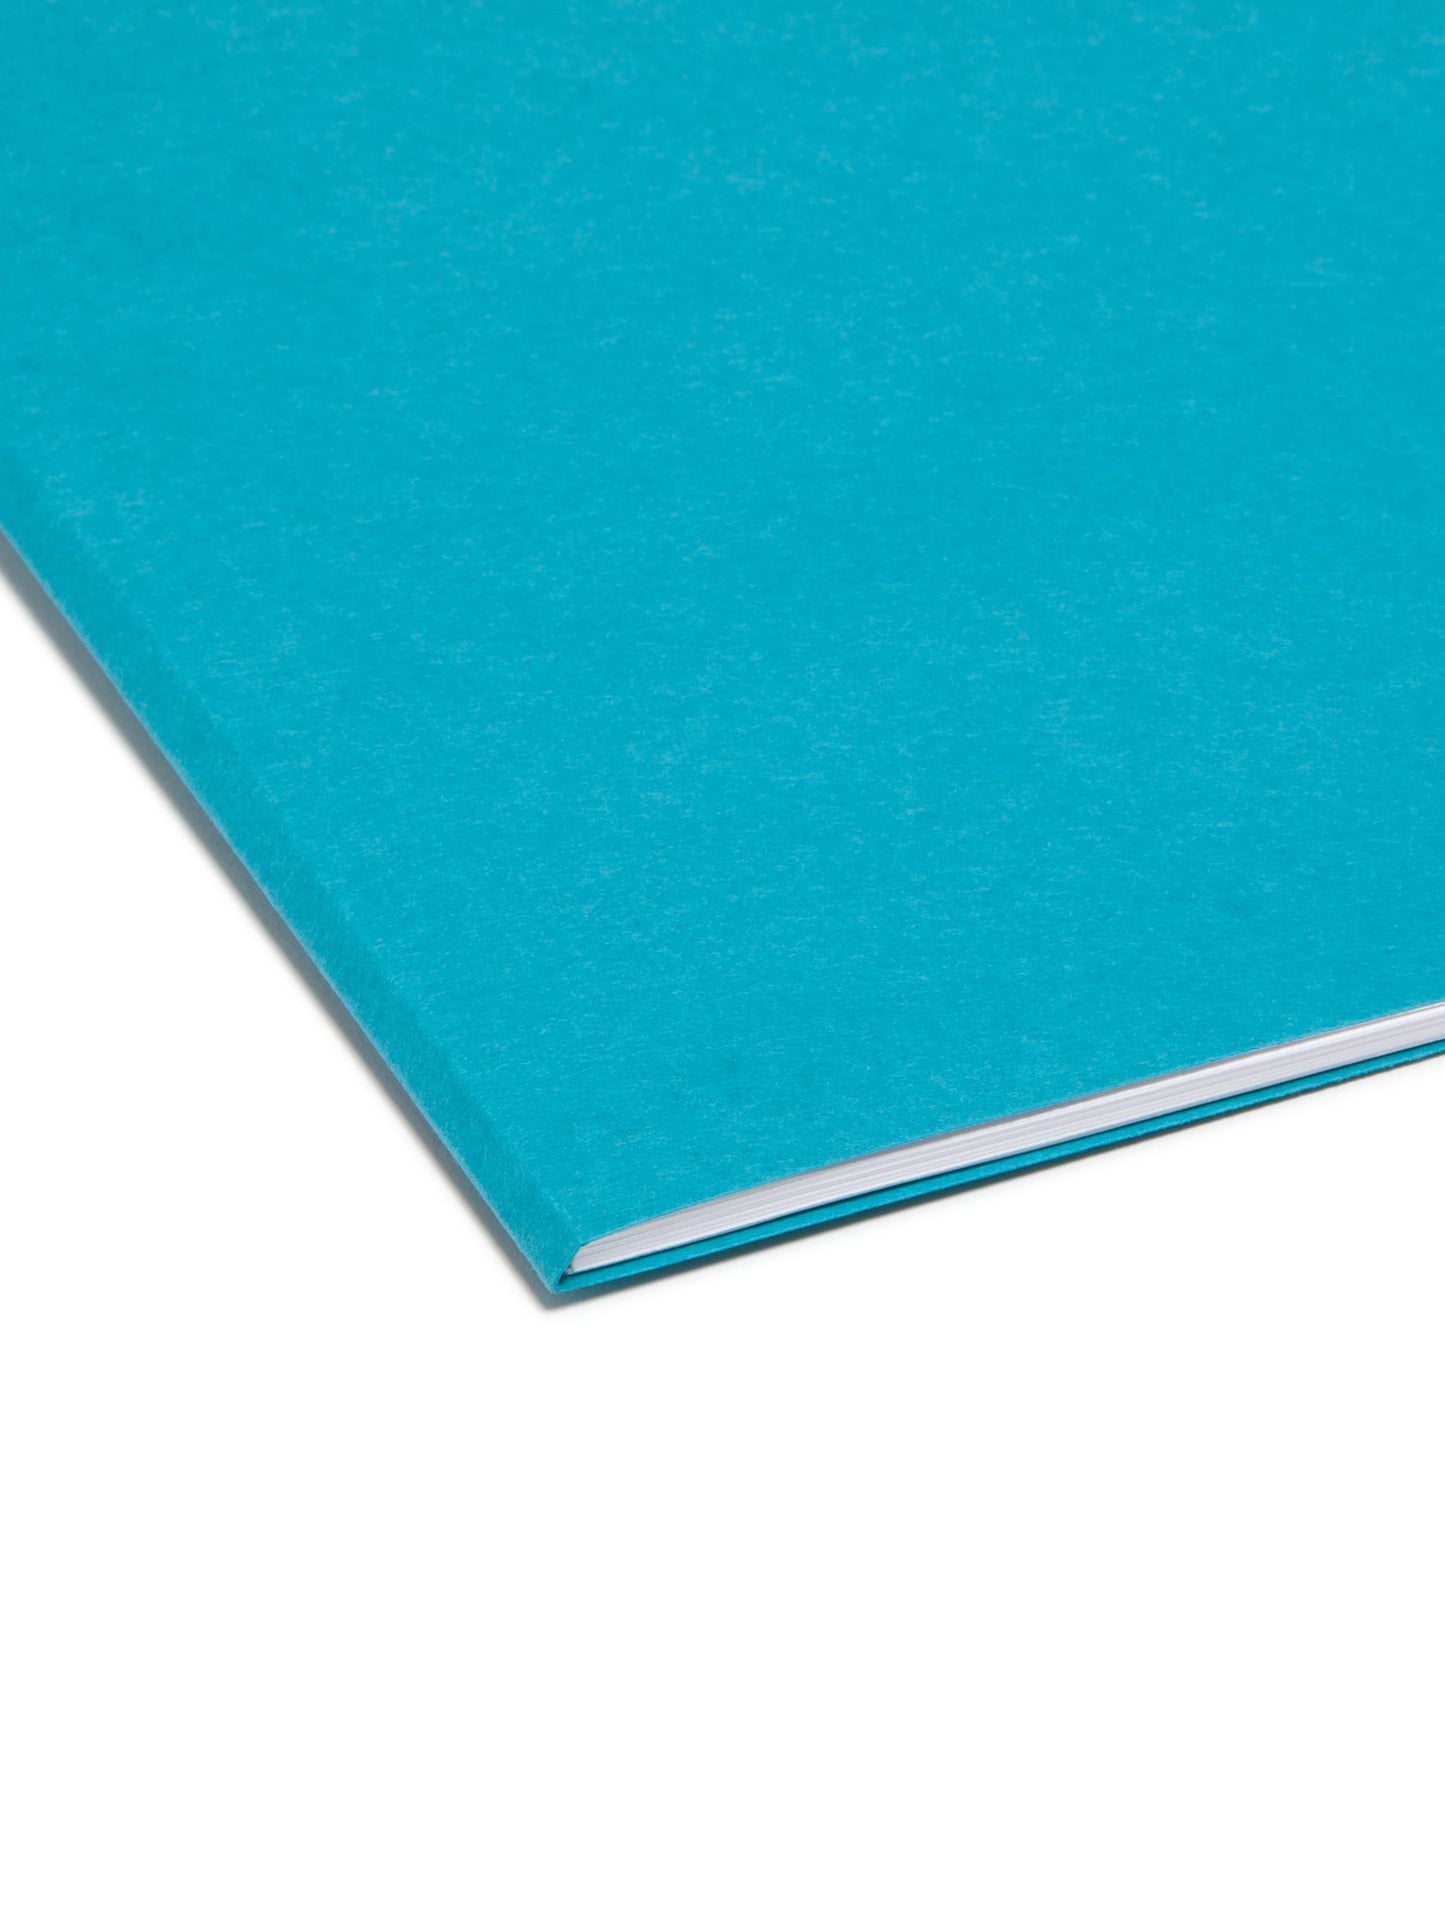 Standard File Folders, 1/3-Cut Tab, Teal Color, Letter Size, Set of 100, 086486131438